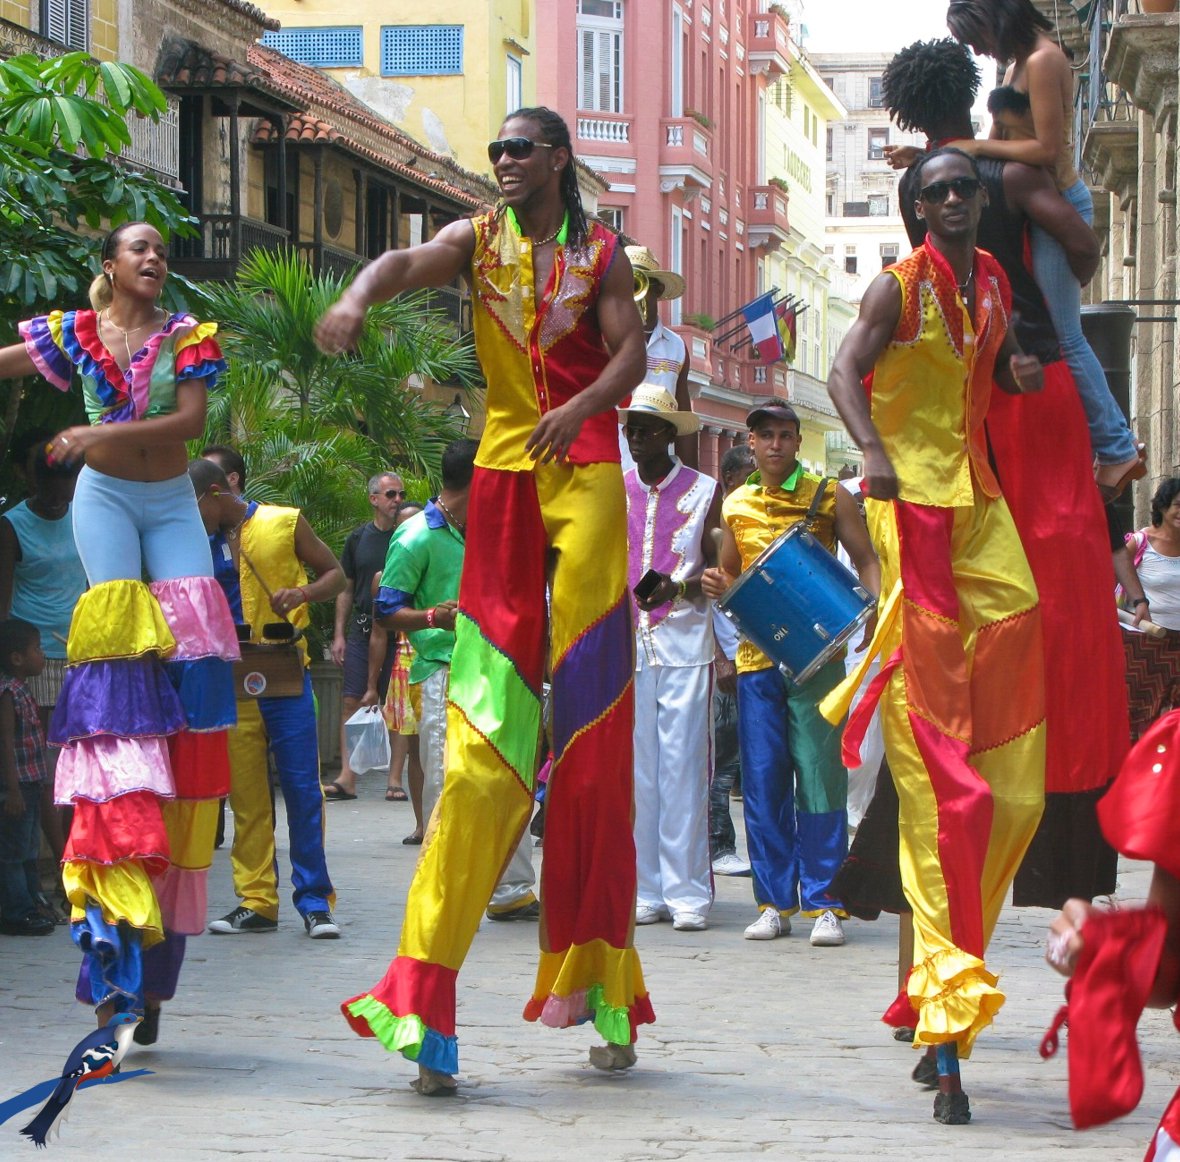 Aproveite a festa em Havana, Cuba